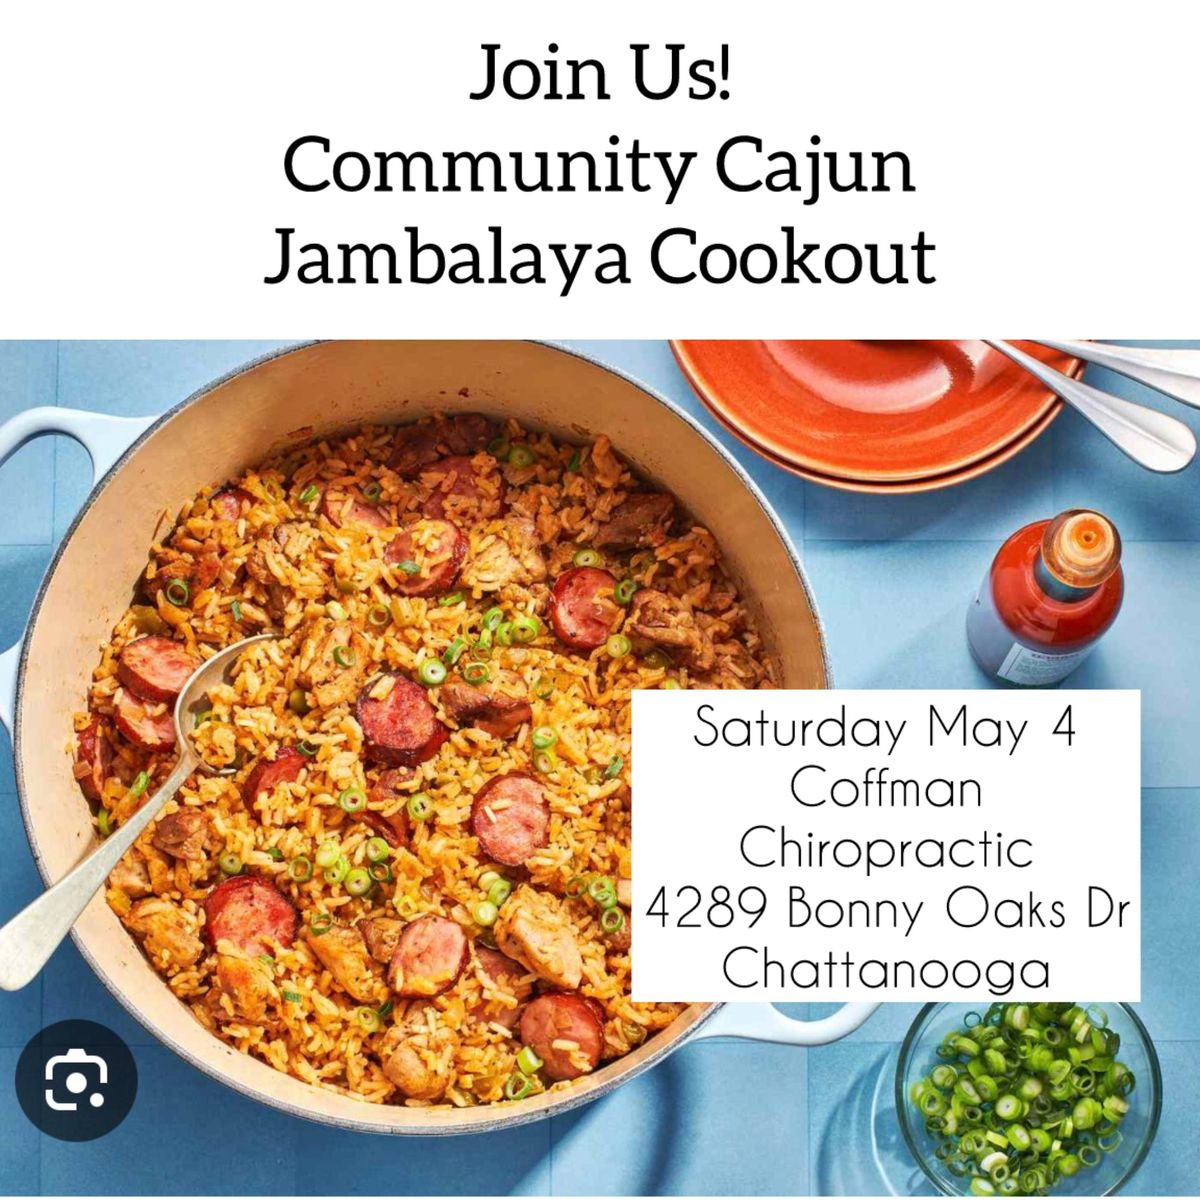 Community Cajun Jambalaya Cookout